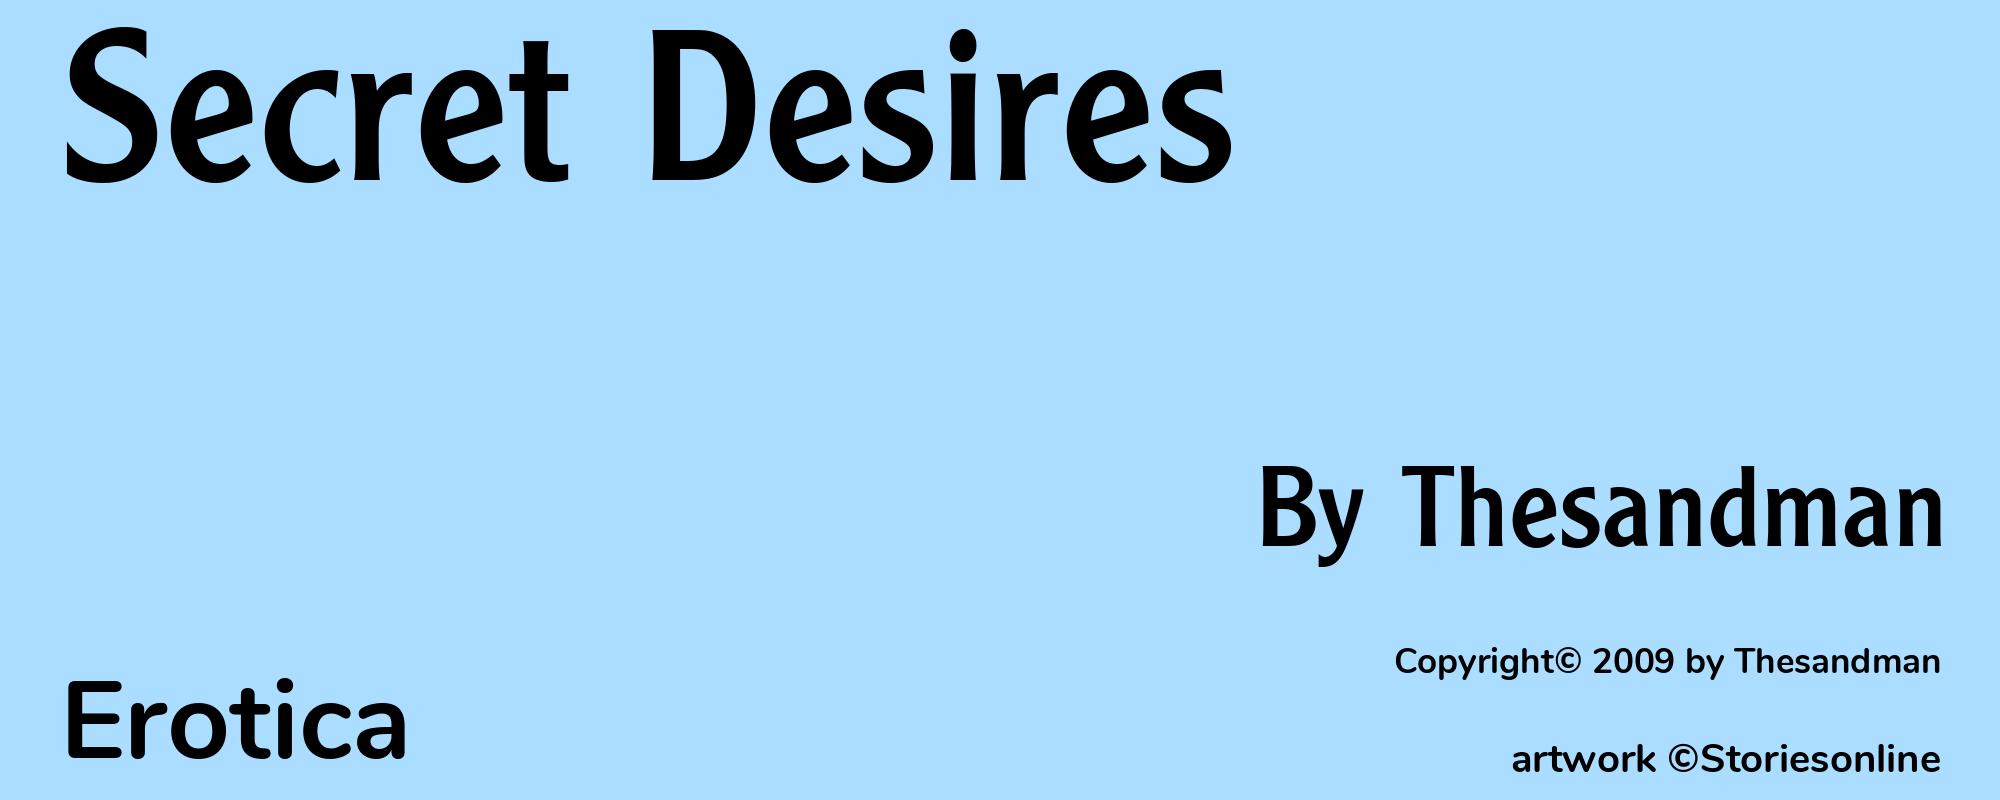 Secret Desires - Cover